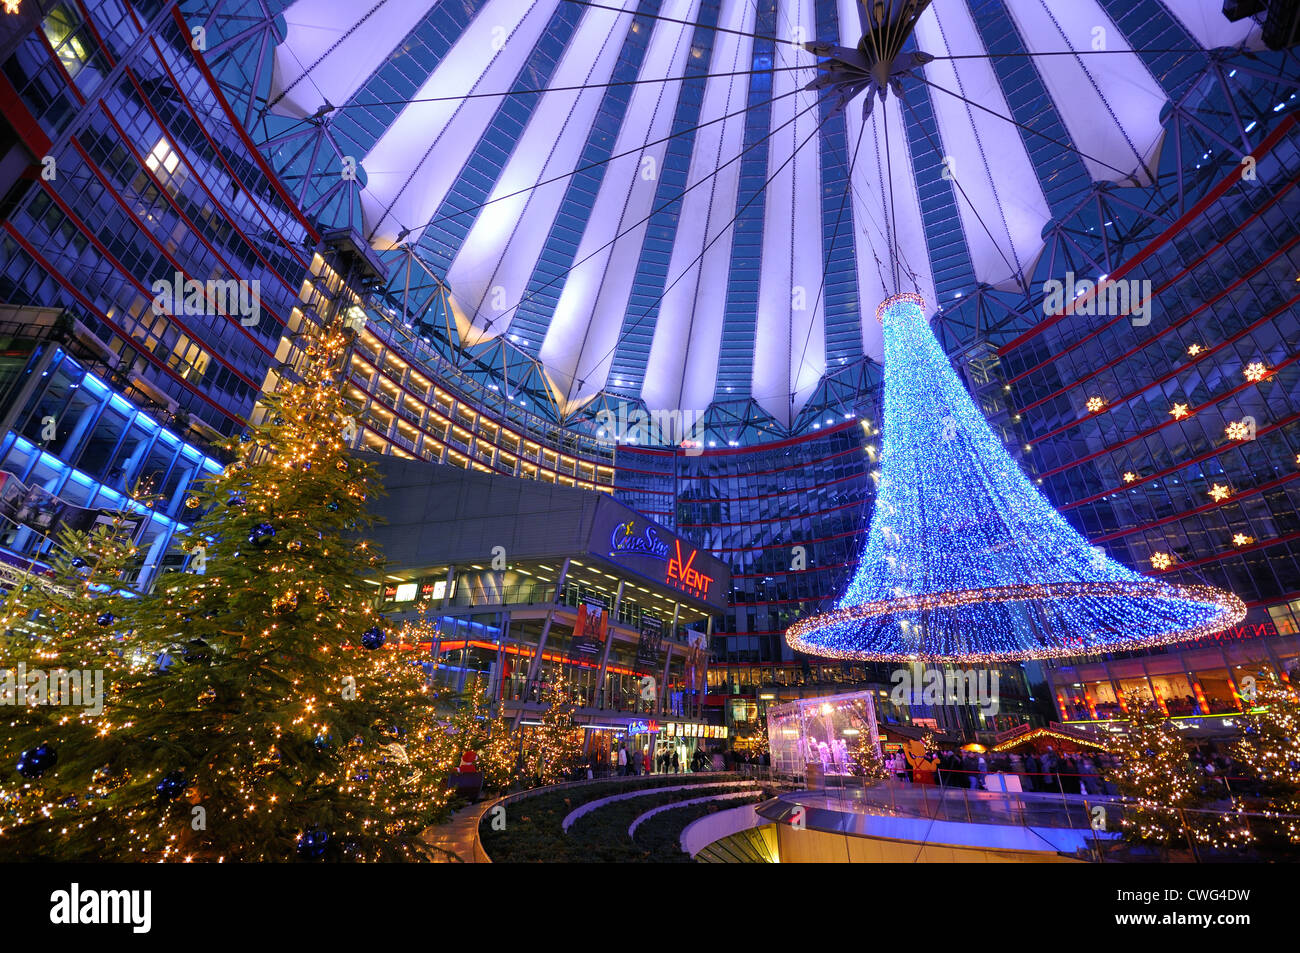 Weihnachten im Sony Center. Weihnachtsmarkt mit Lichterketten, Sony Center, Potsdamer Platz, Berlin, Deutschland, Europa Stockfoto